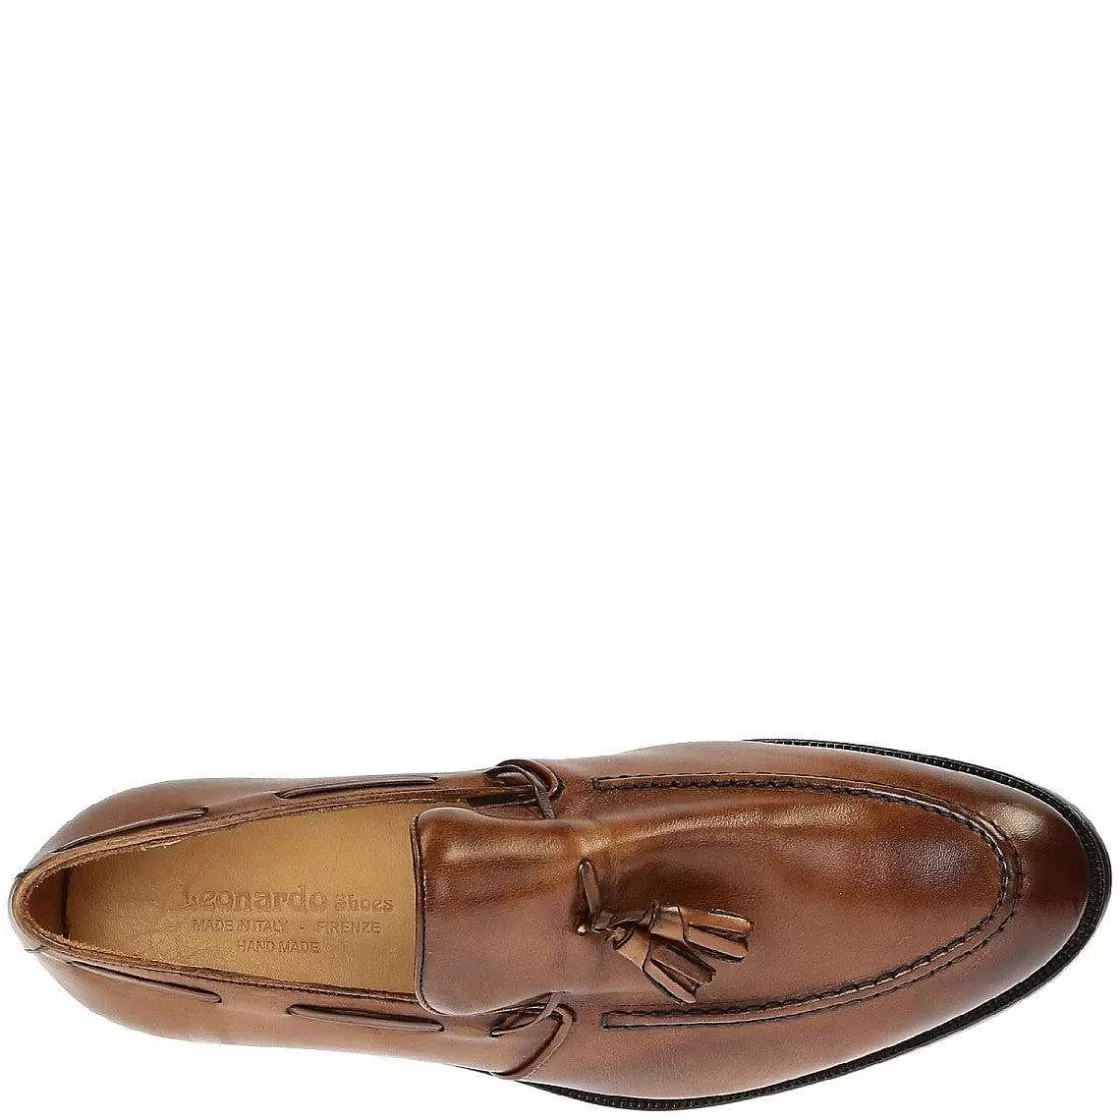 Leonardo Men'S Tassel Loafers In Tan Leather Shop